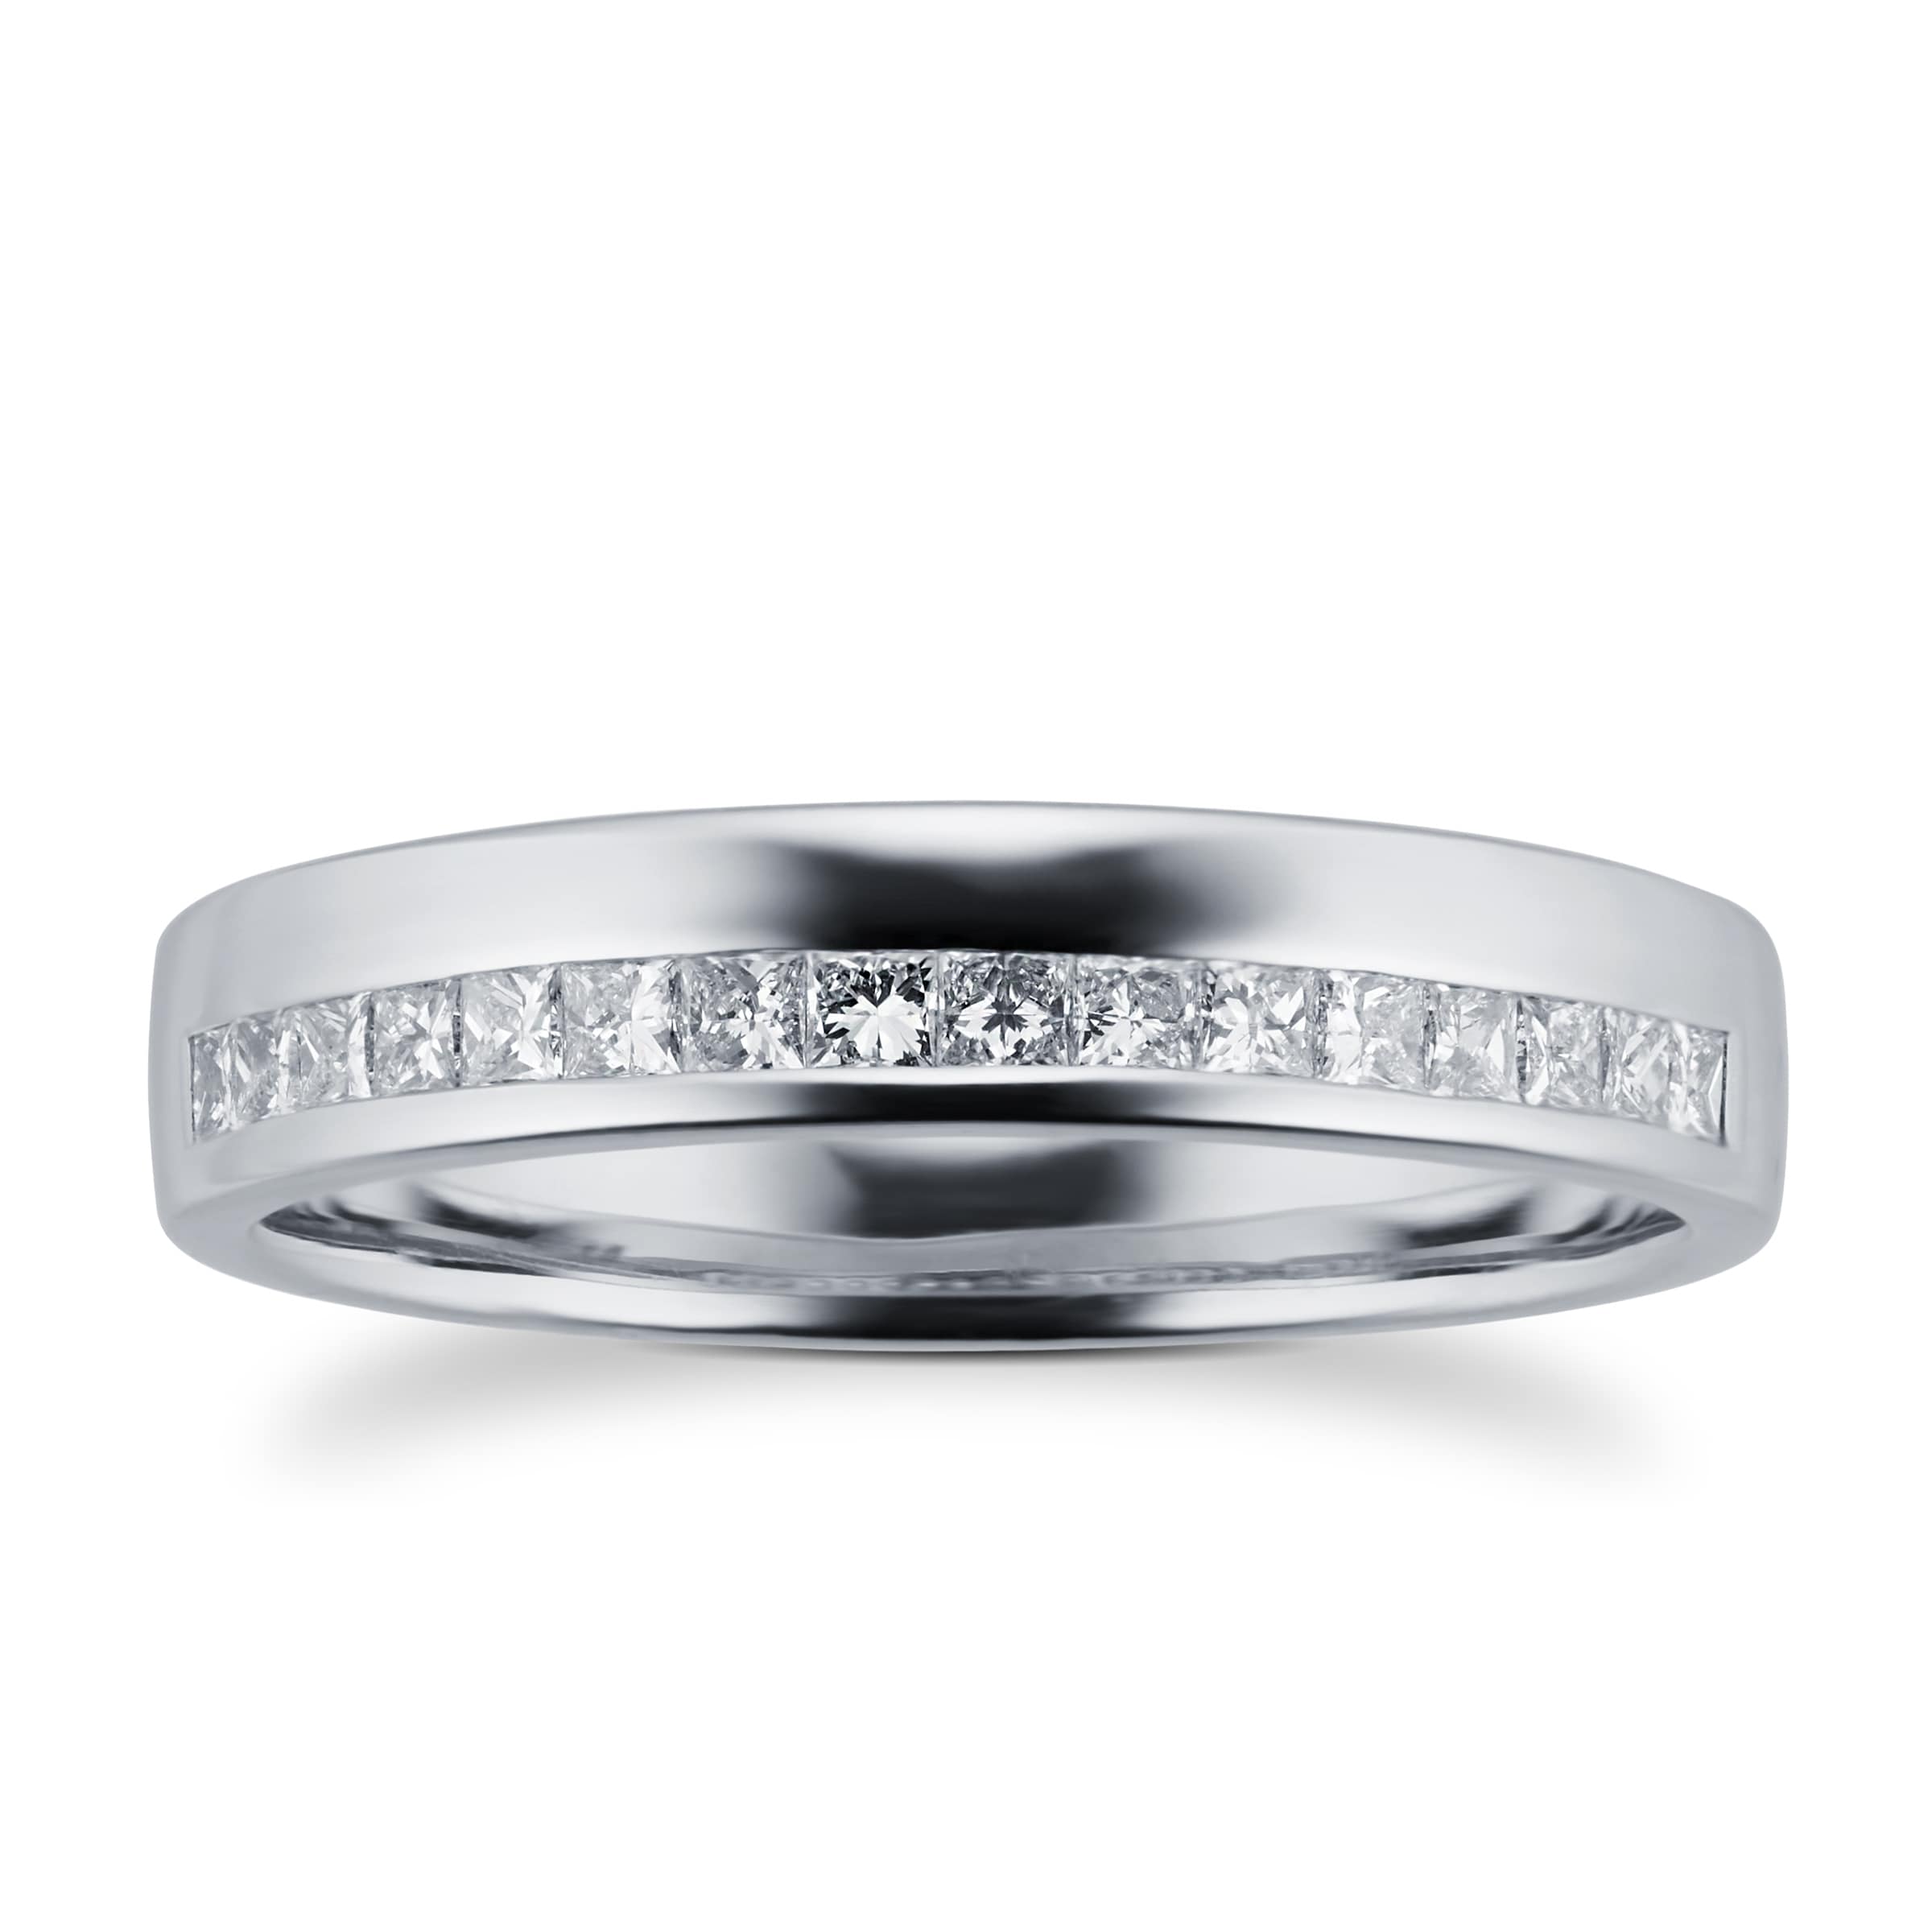 Princess Cut 0.33 Total Carat Weight Diamond Ladies Wedding Ring Set In Platinum - Ring Size M